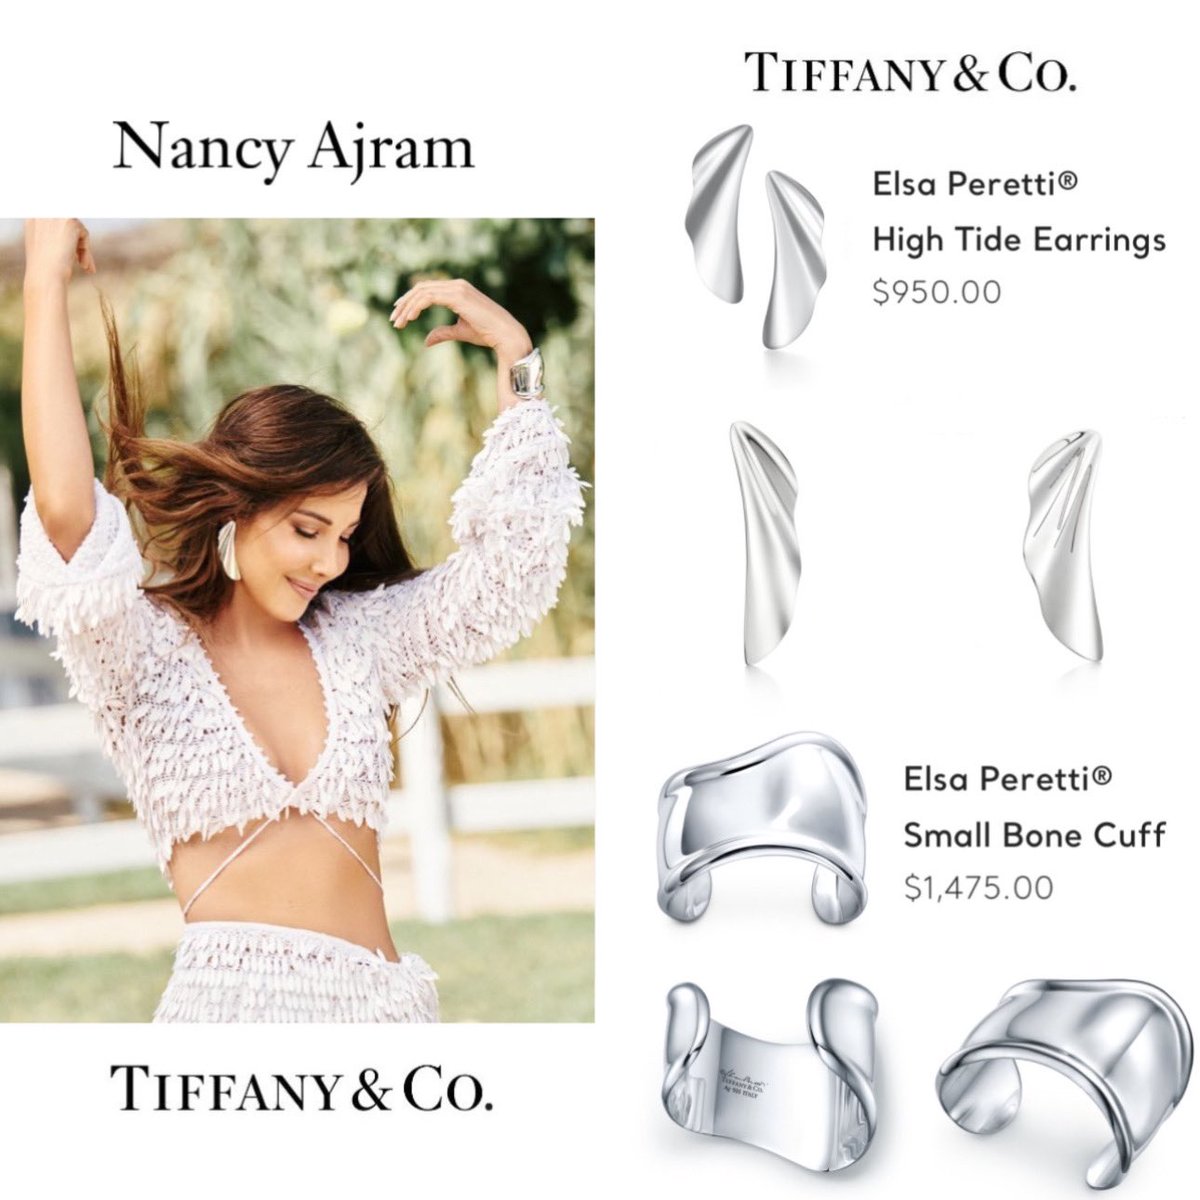 سفيرة دار المجوهرات العريقة #TiffanyAndCo  في الشرق الاوسط نانسي عجرم تطل في كليبها الجديد #تيجي_ننبسط  من مجموعة #ElsaPeretti

#TegyNenbeset #NancyXTiffanyAndCo #NancyXTiffany